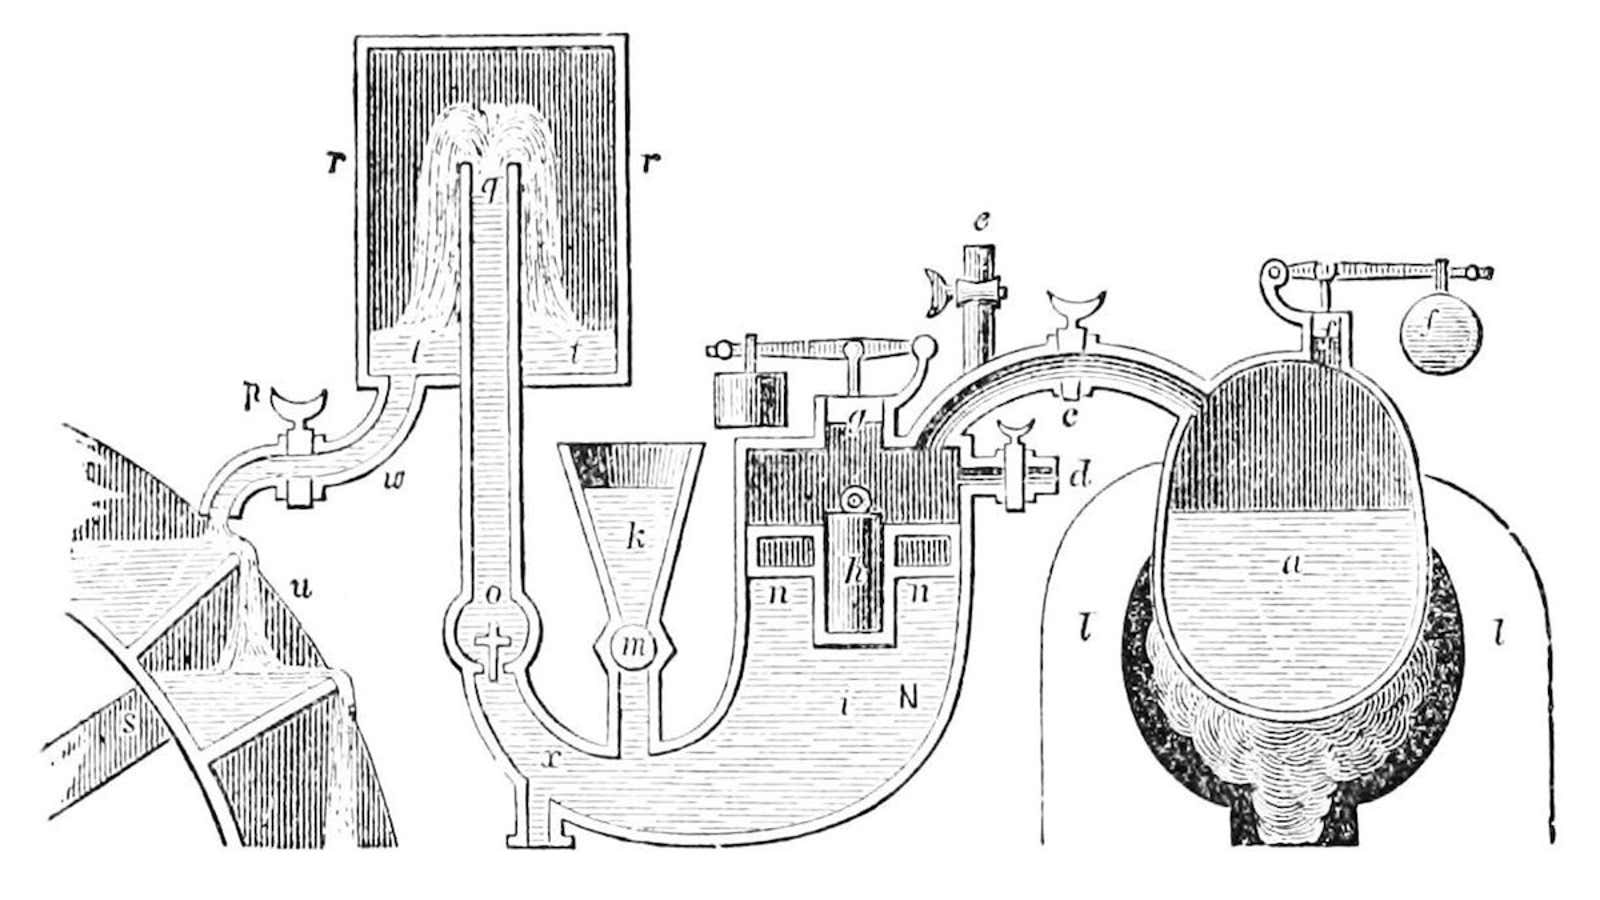 The Papin marine engine (1707).